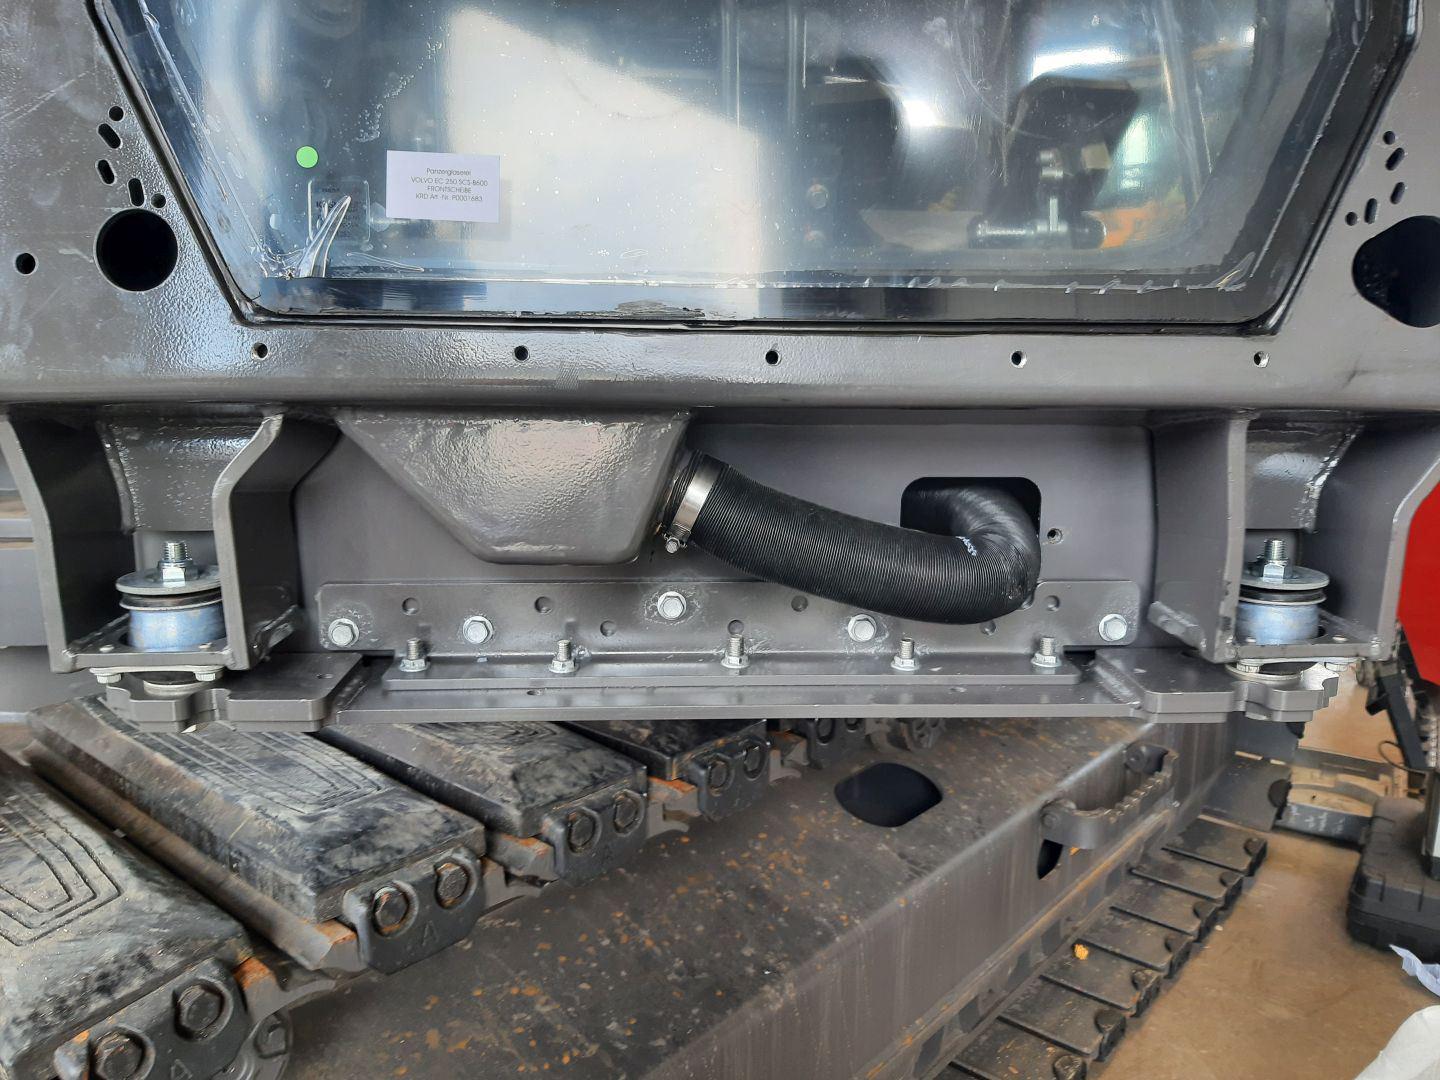 Verpanzerung mit Panzerglas und FOPS für Volvo Bagger für Abbruch, Abriss und Munitionsbergung, Explosionsschutz ER 4